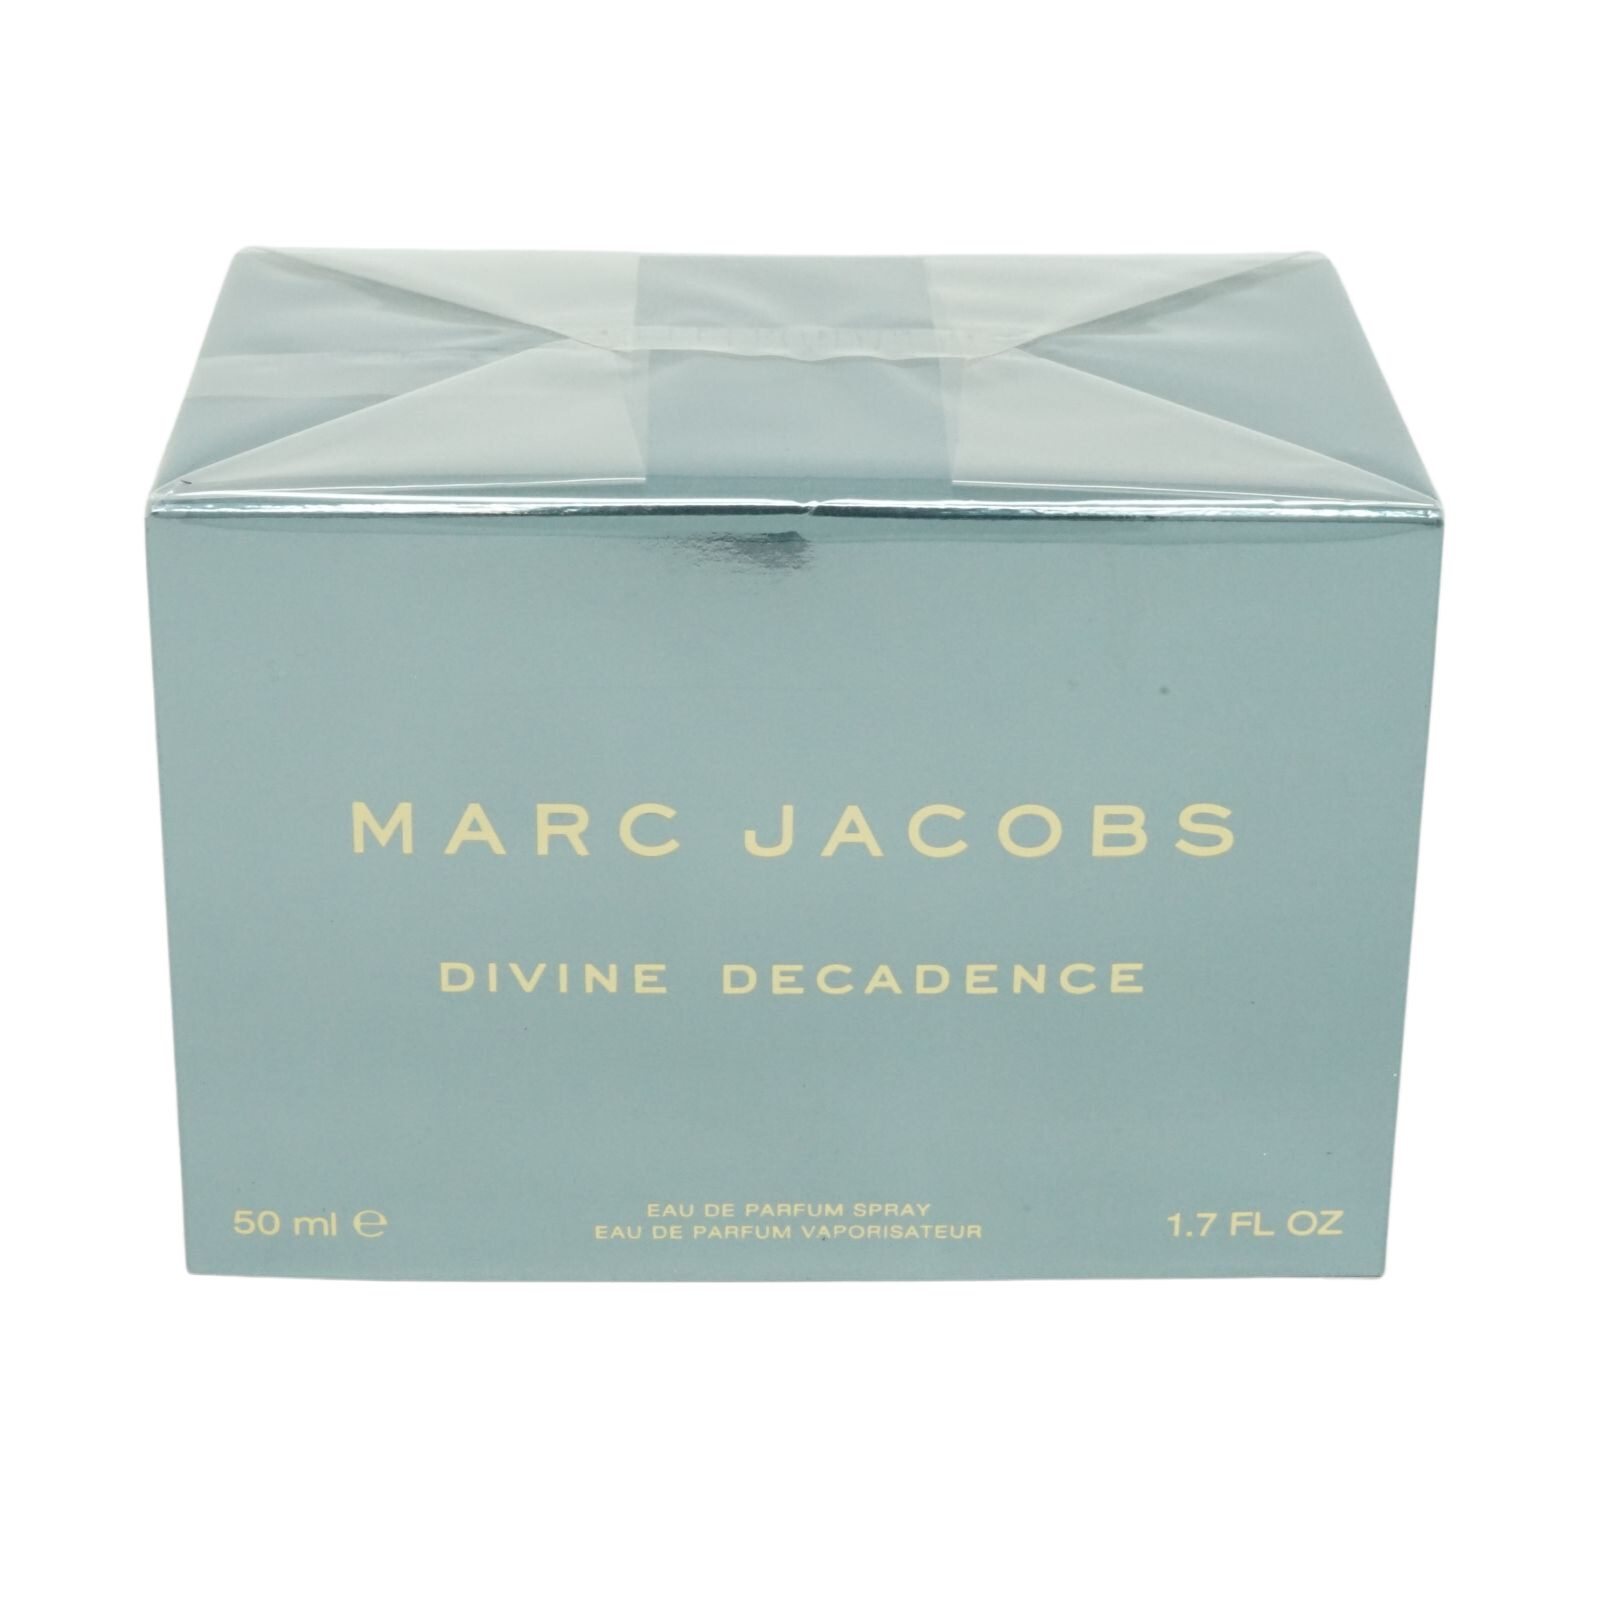 Marc Spray Parfum Eau 50ml Decadence de Eau Jacobs Divine Toilette de MARC JACOBS